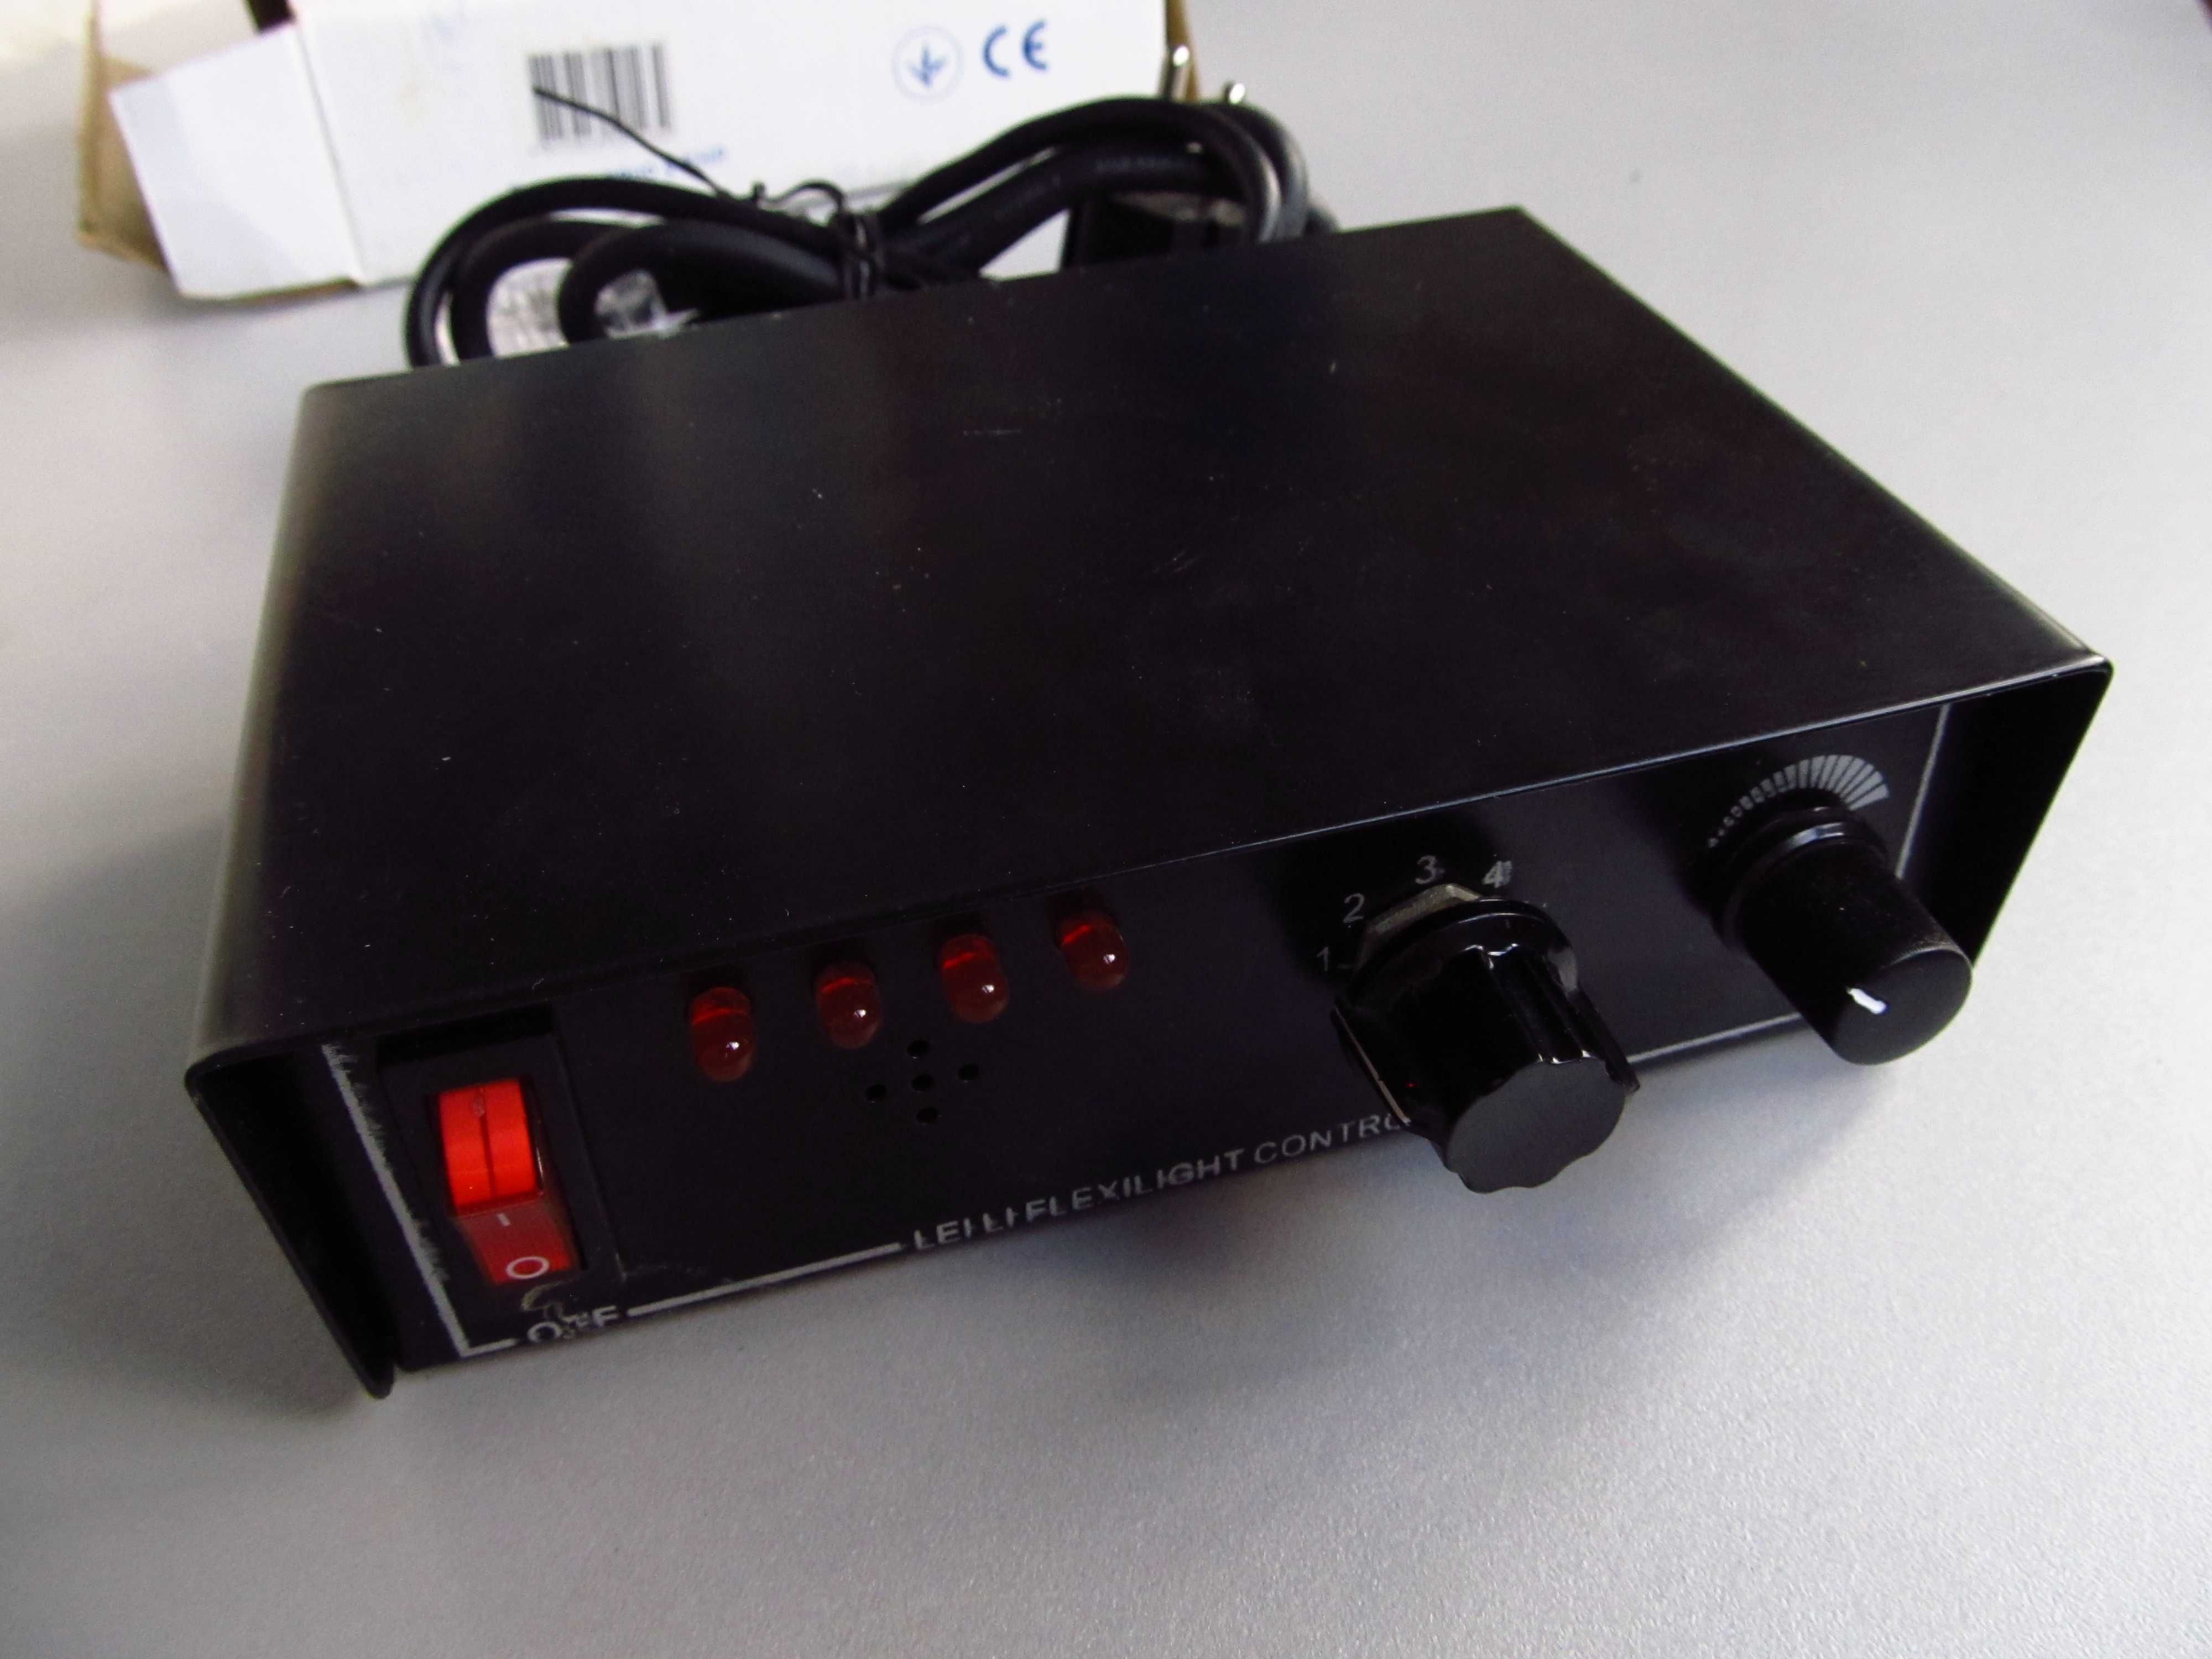 Контроллер для дюралайта (светового провода) DELUX LED max 100m.